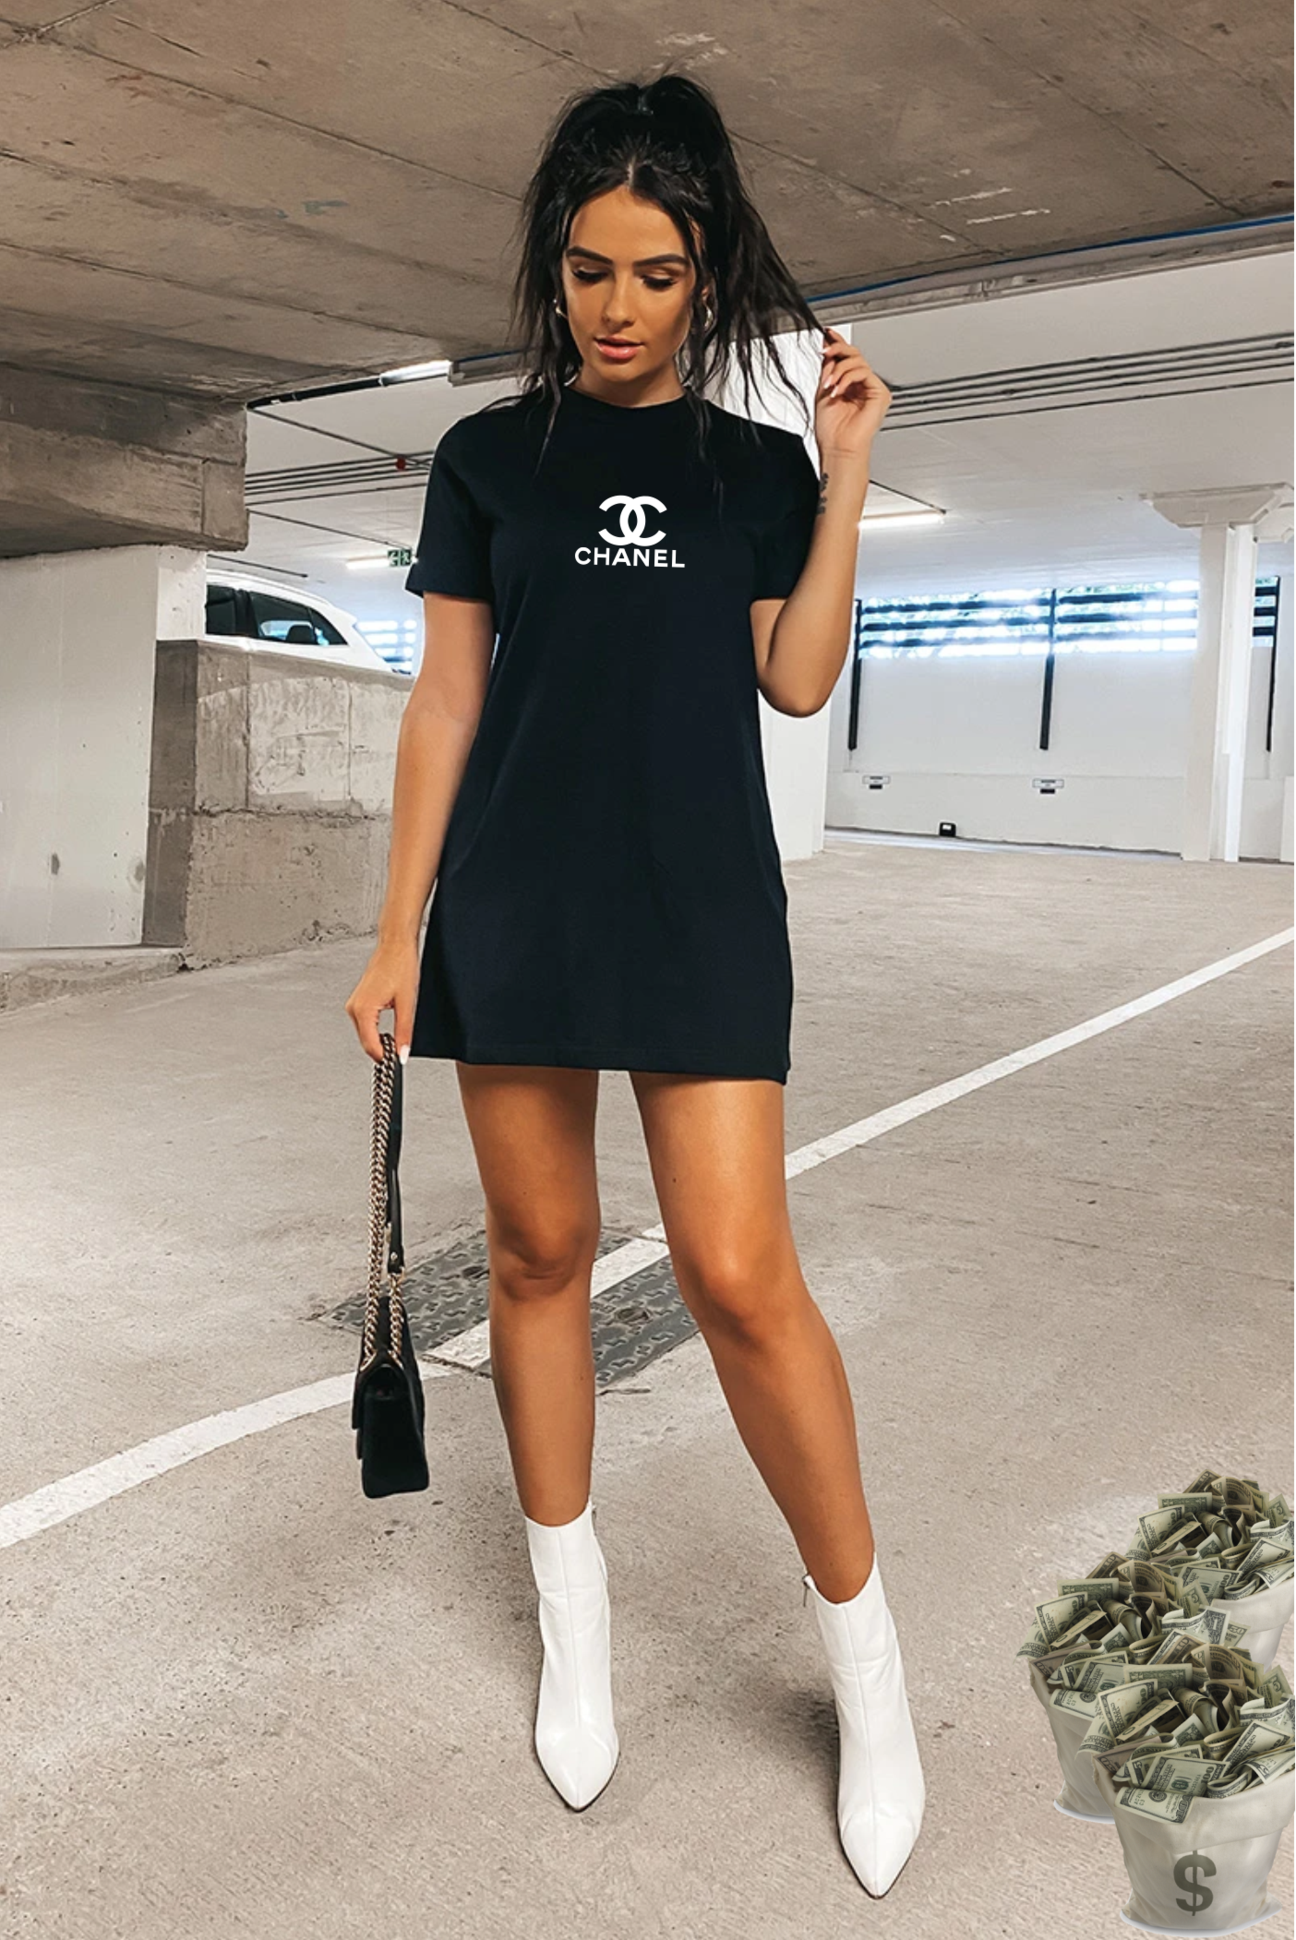 Cc t shirt / black